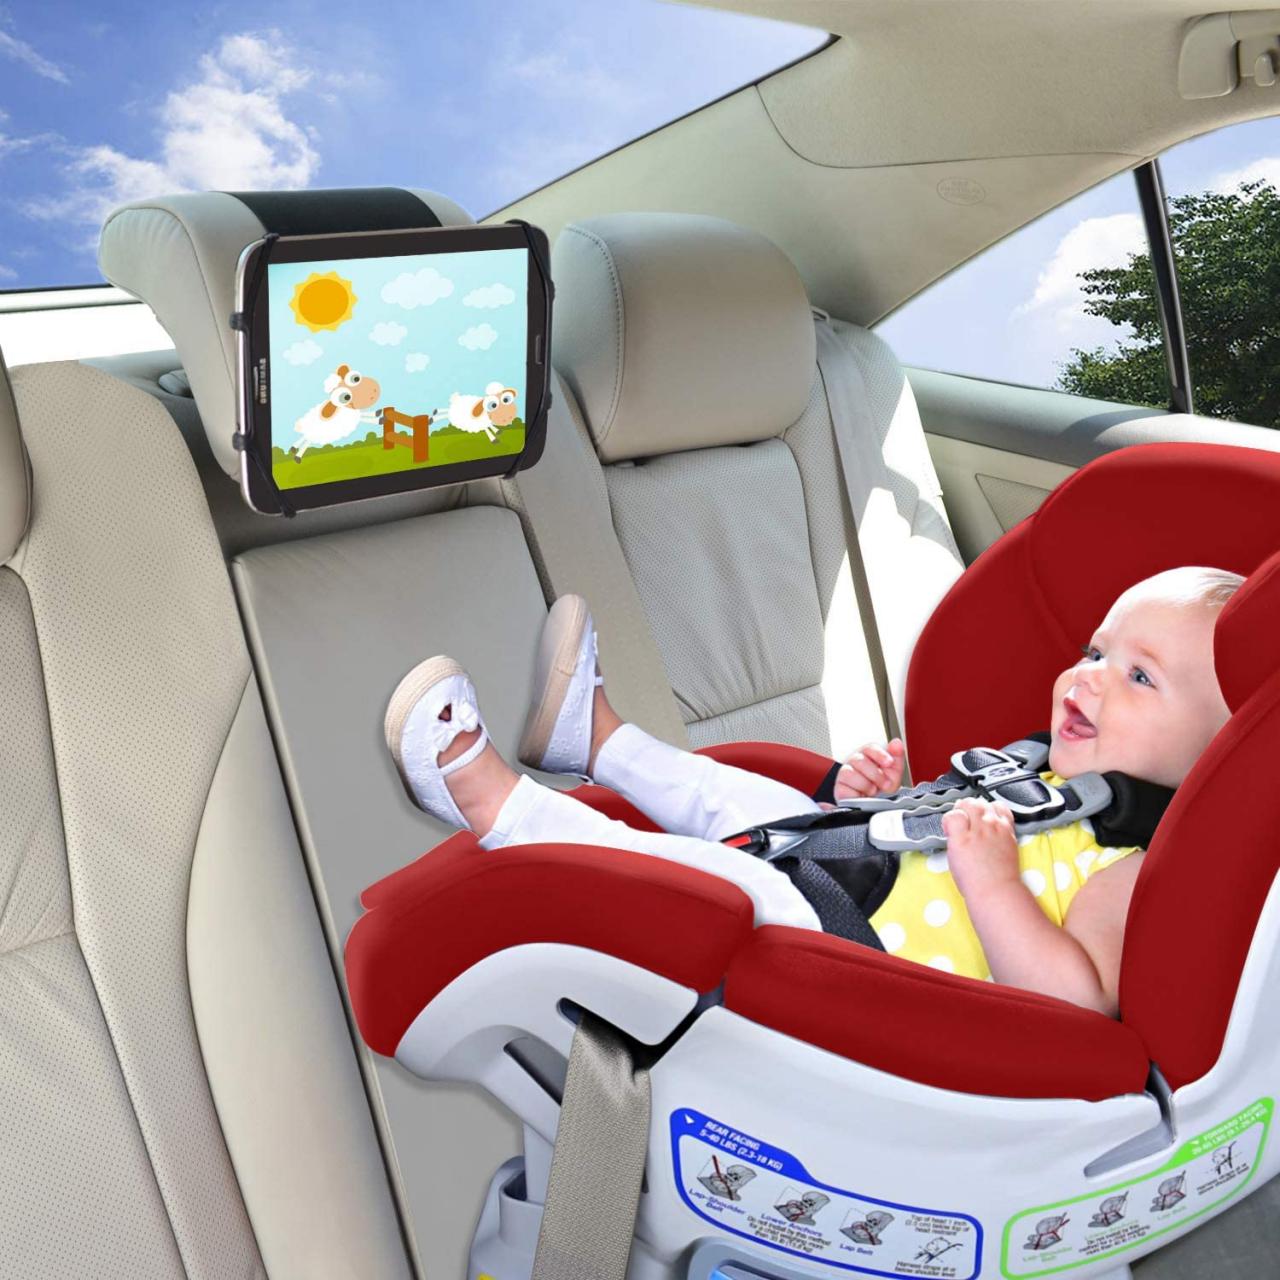 TFY Universal Car Headrest Mount Holder for 18cm to 28cm Tablet PC -  5TABLETBLK for sale online | eBay